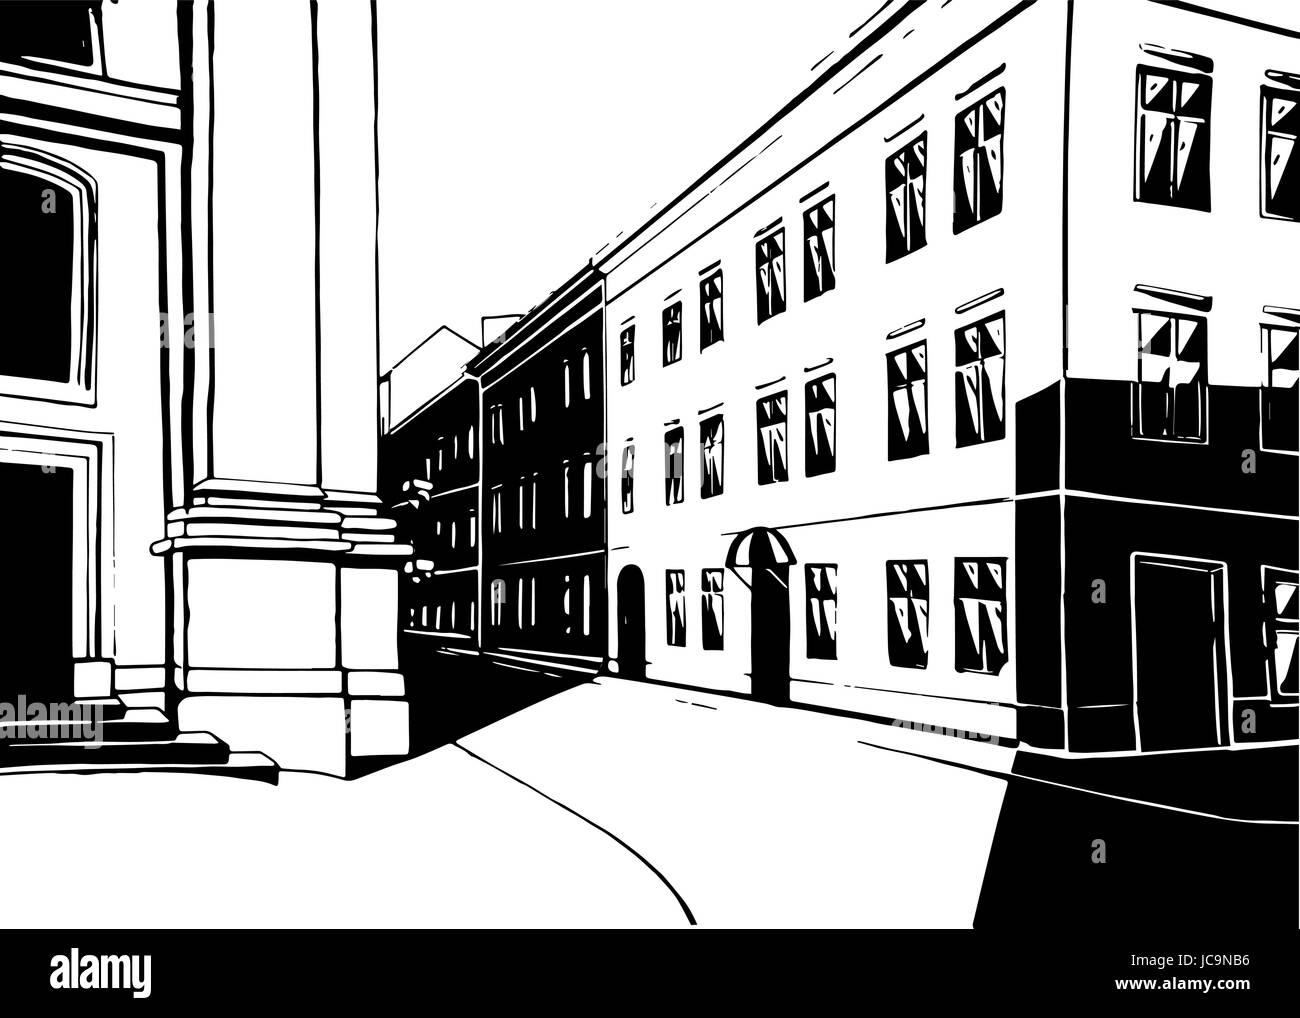 Rue Ville bâtiment maison noir et blanc contraste réaliste s'épanouir la vie urbaine Lviv historique historique du paysage. Close-up Vector frontal avant Illustration de Vecteur